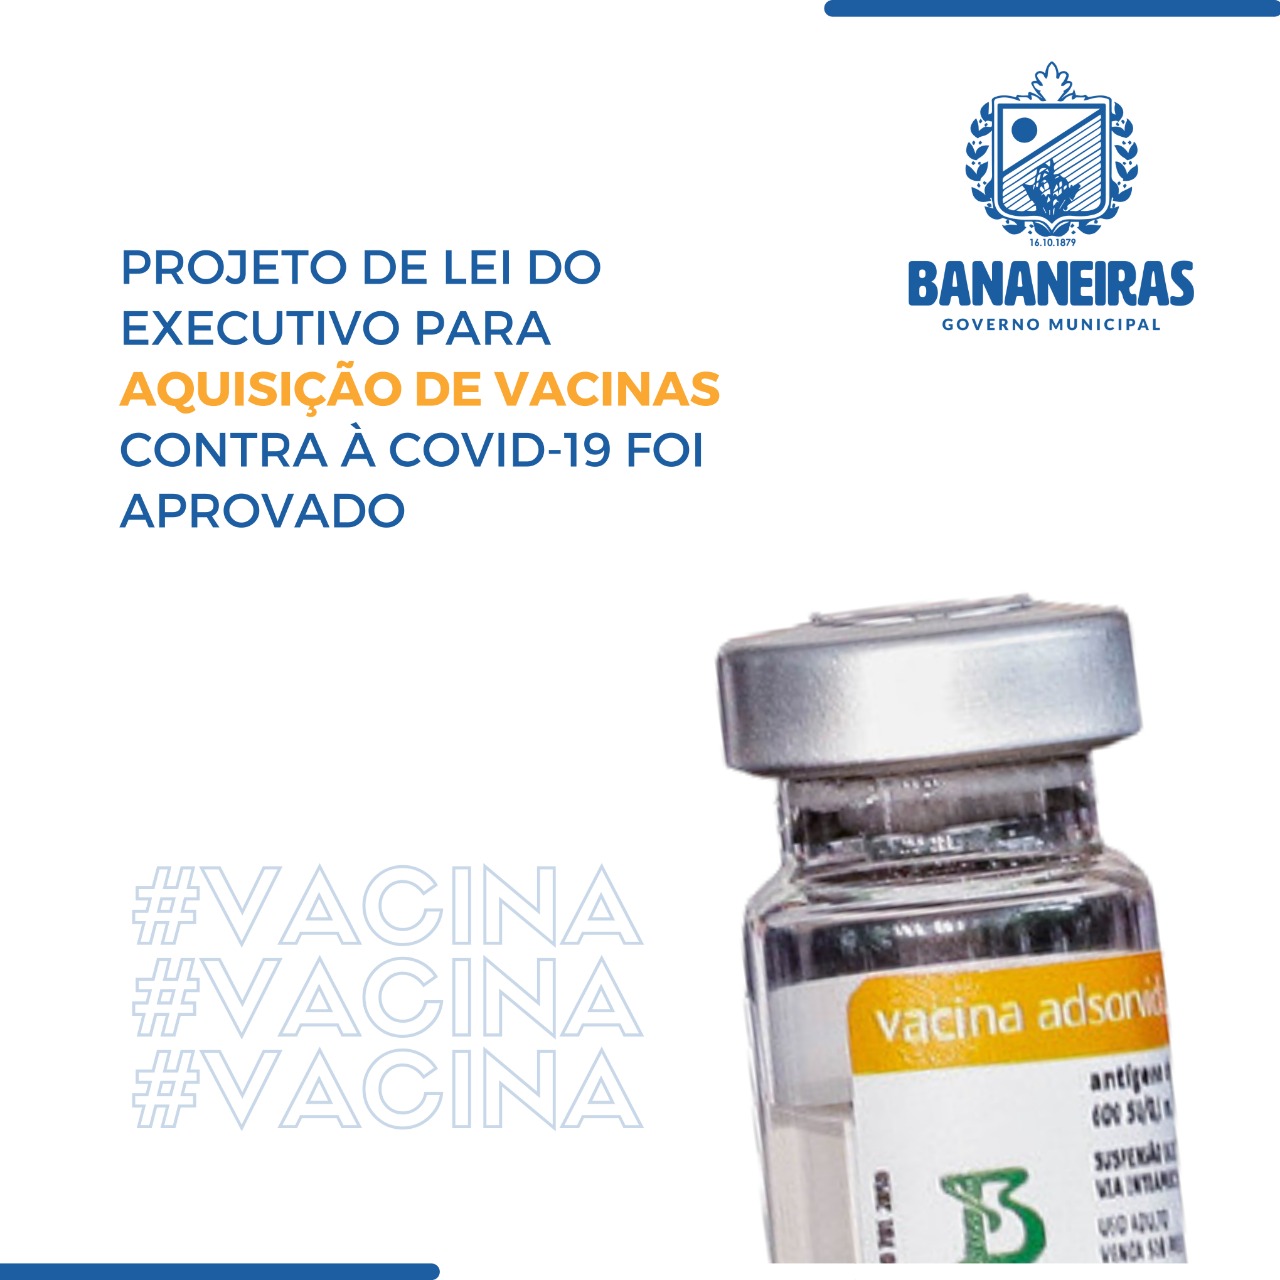 Contrato de aquisição de vacinas contra a COVID-19 foi aprovado em Bananeiras